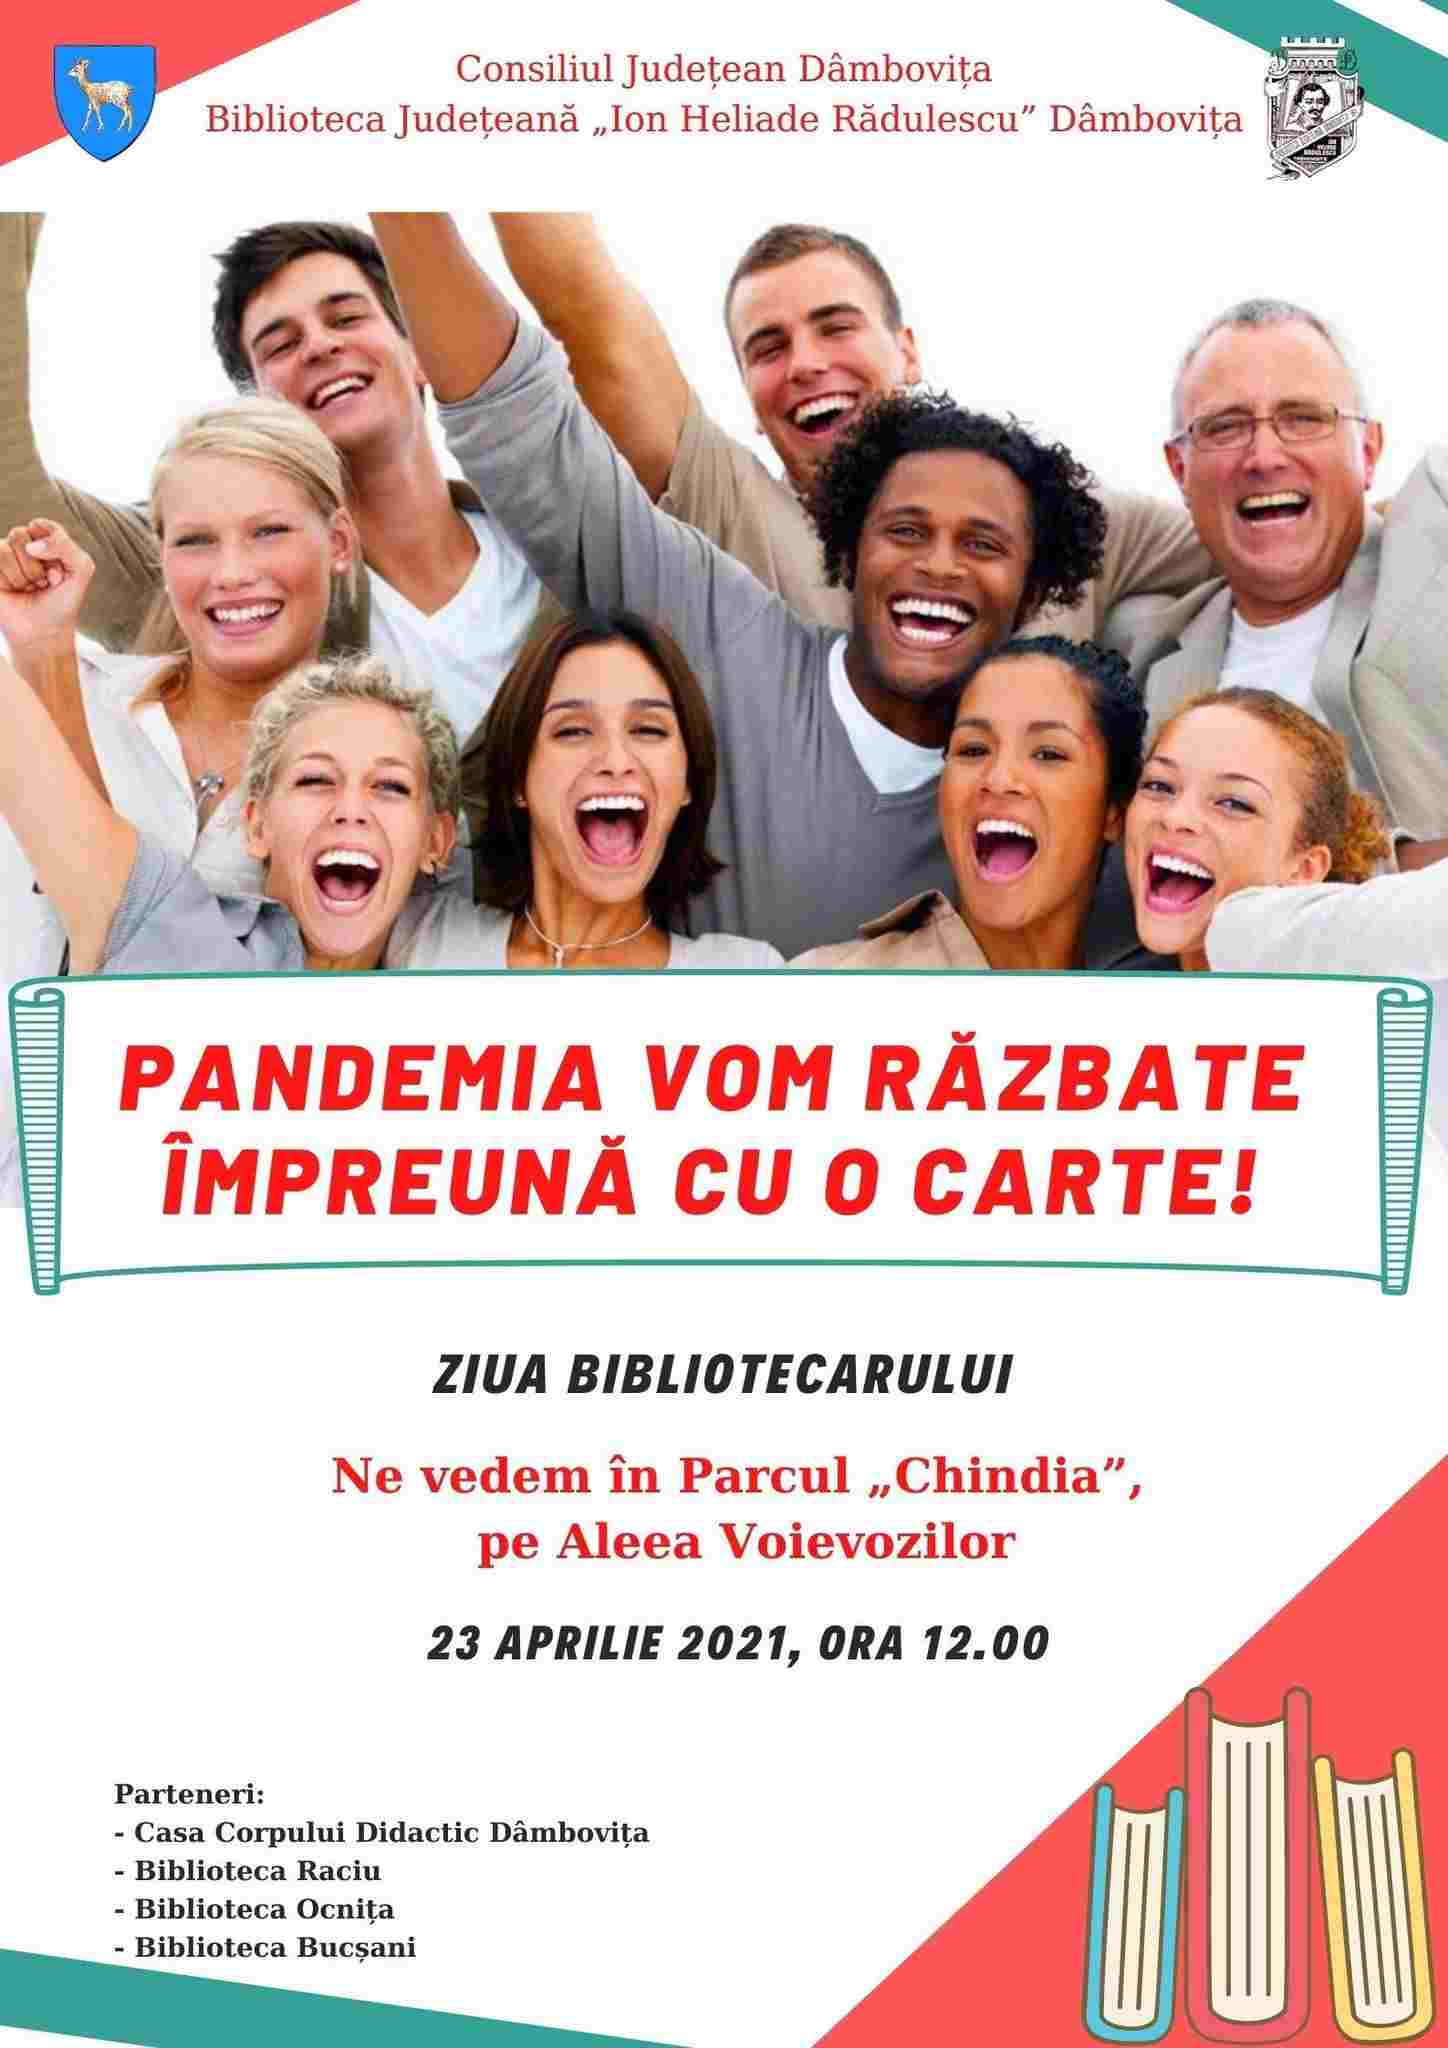  23 aprilie - Ziua mondială a cărţii şi a dreptului de autor,  Ziua Bibliotecarului din România.